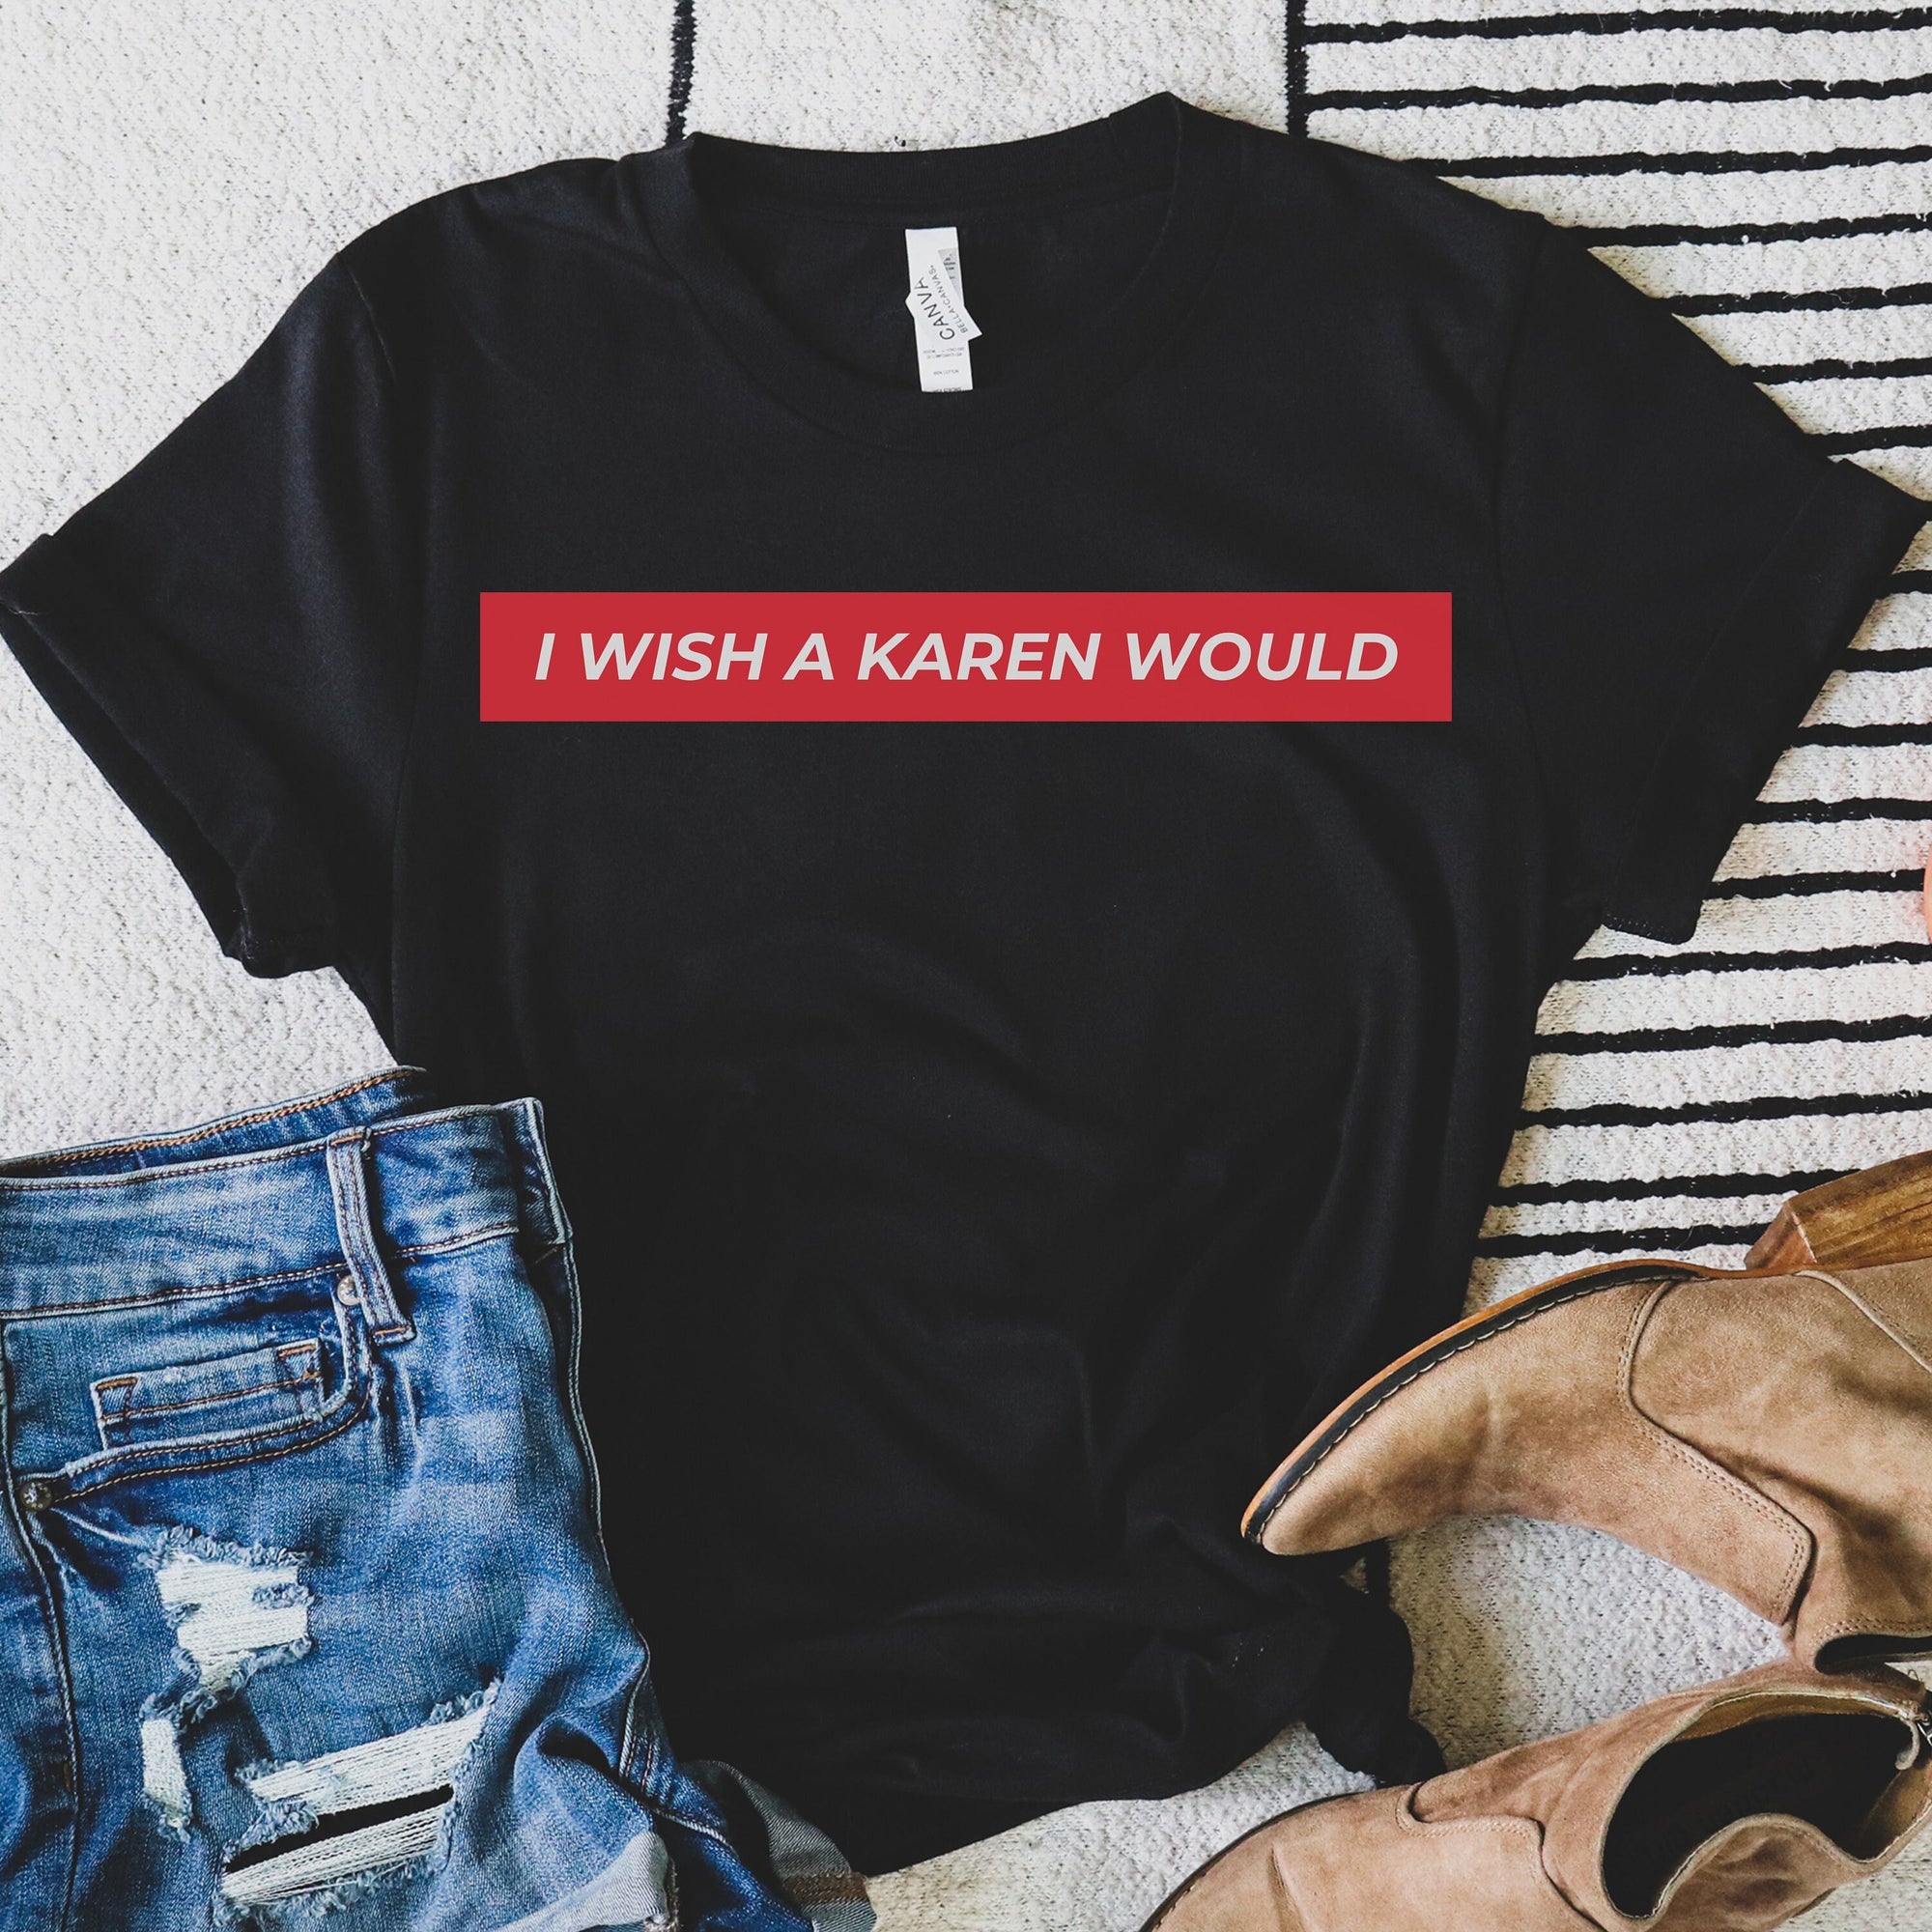 I Wish A Karen Would Shirt, Revolt T-shirt, Protest Shirt, Social Justice, Shirt, No Justice No Peace, Black Lives Matter | BLM | T-shirt